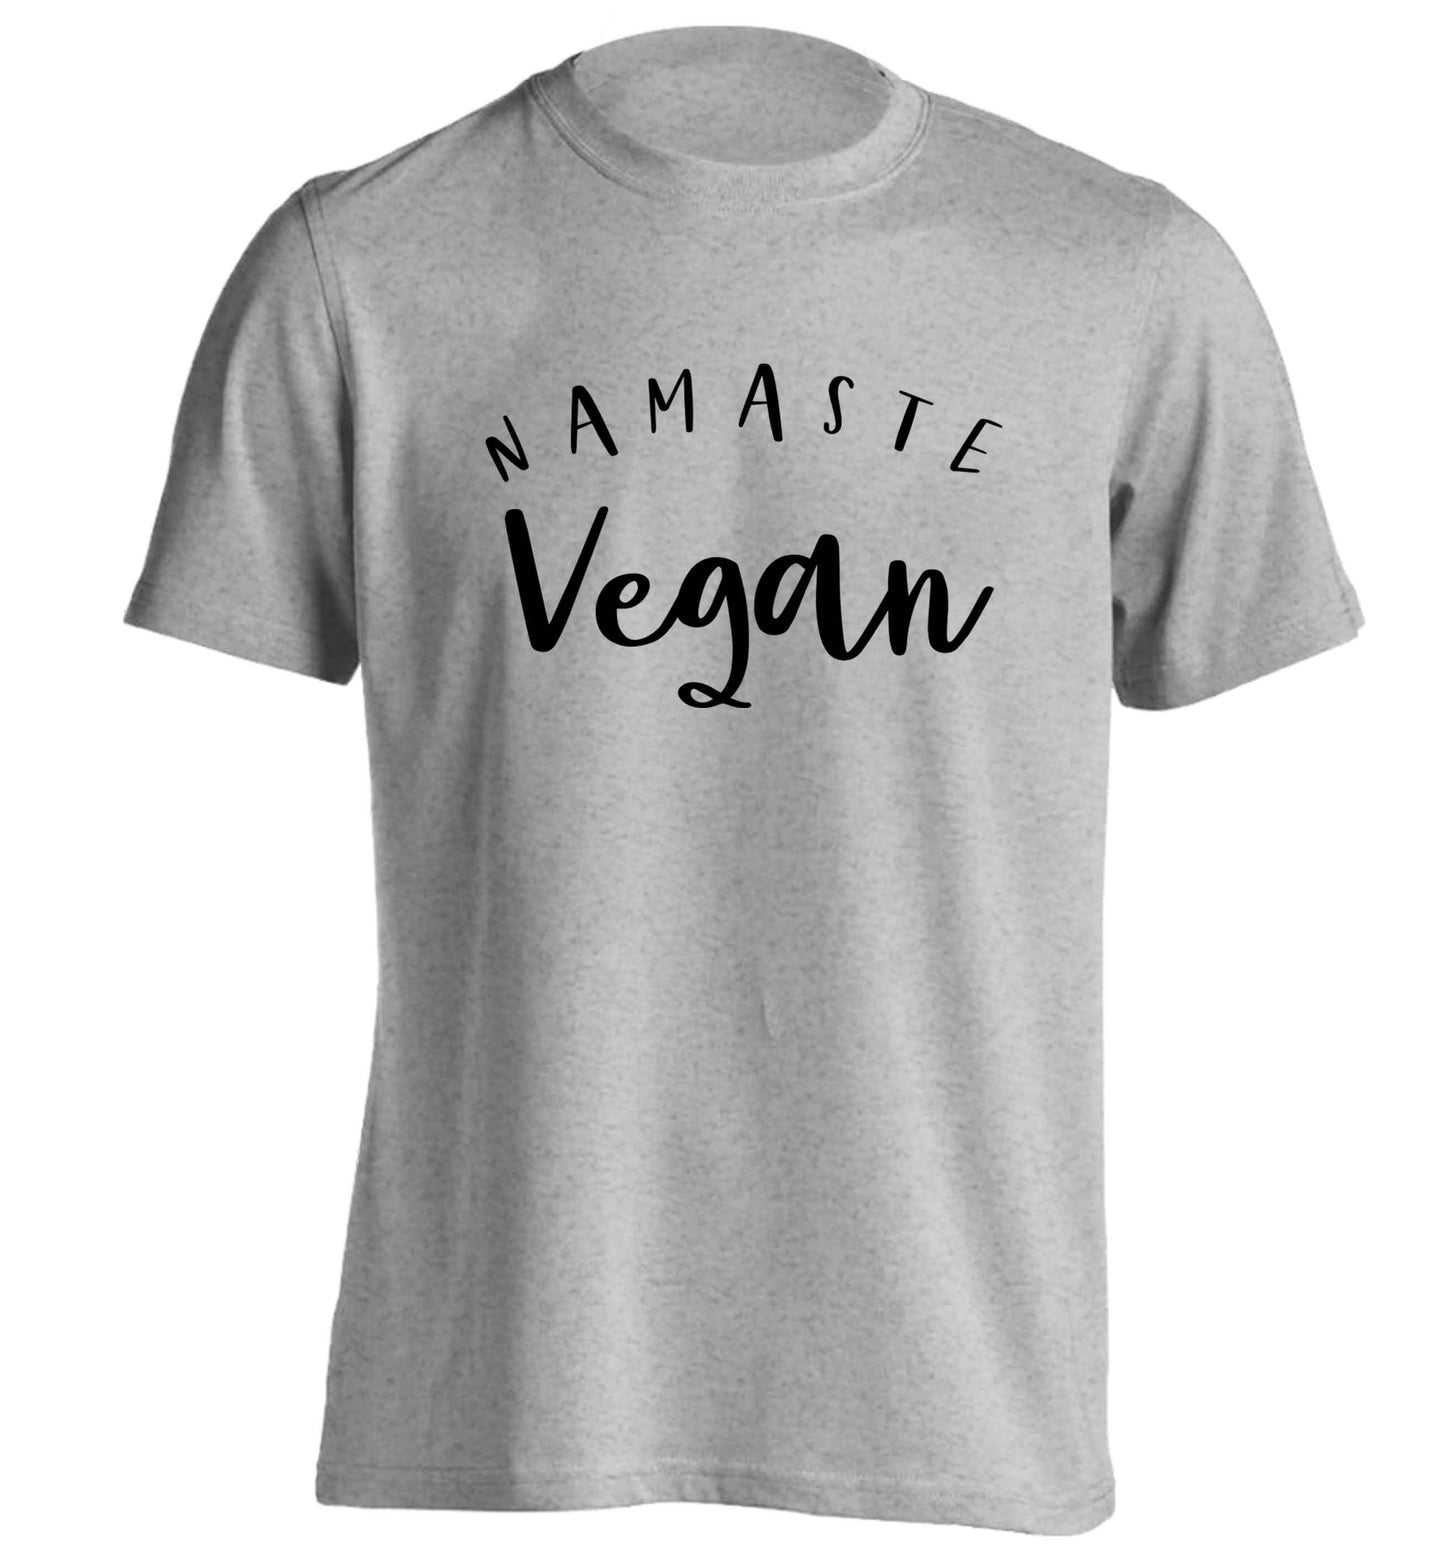 Namaste vegan adults unisex grey Tshirt 2XL